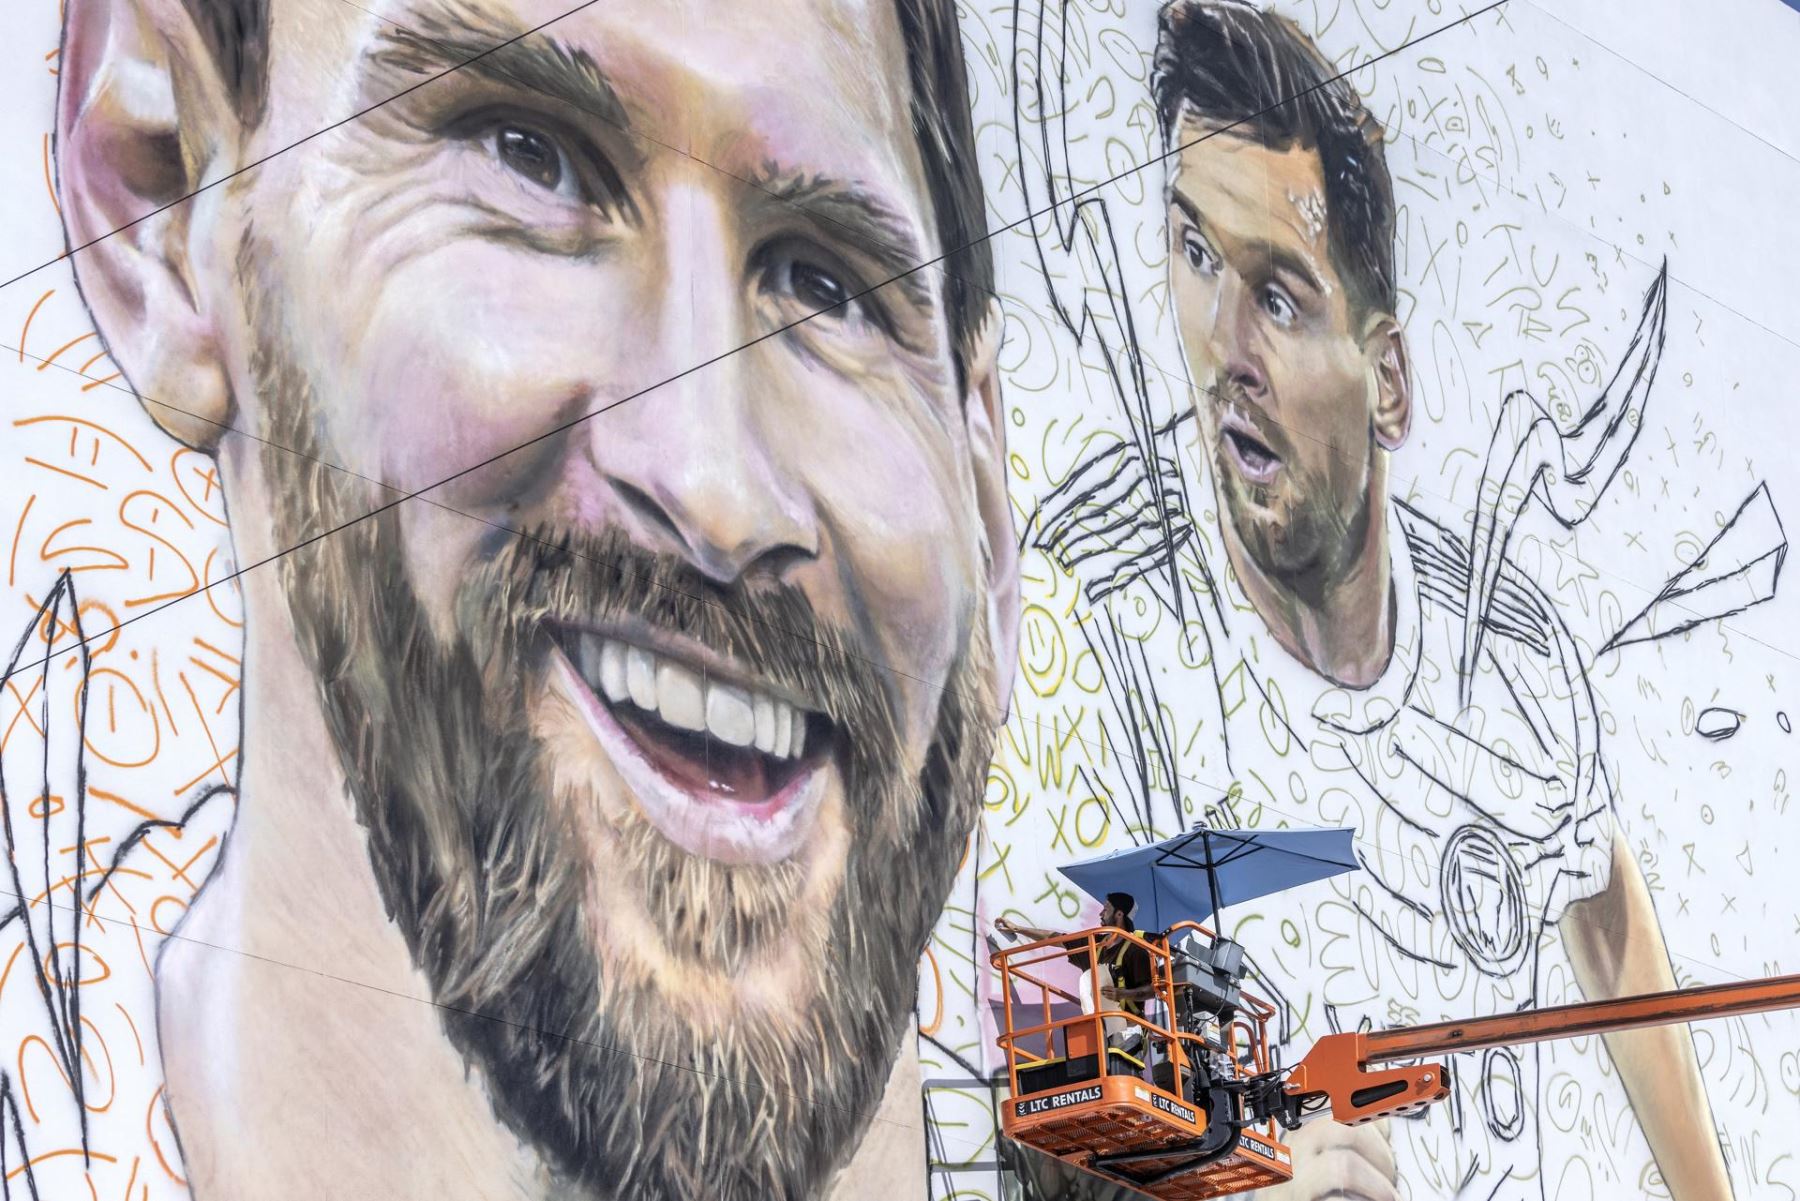 El artista argentino Maximiliano Bagnasco pinta un mural del futbolista compatriota Lionel Messi en un alto muro de siete pisos en Wynwood, Florida, EE.UU.
Foto: EFE